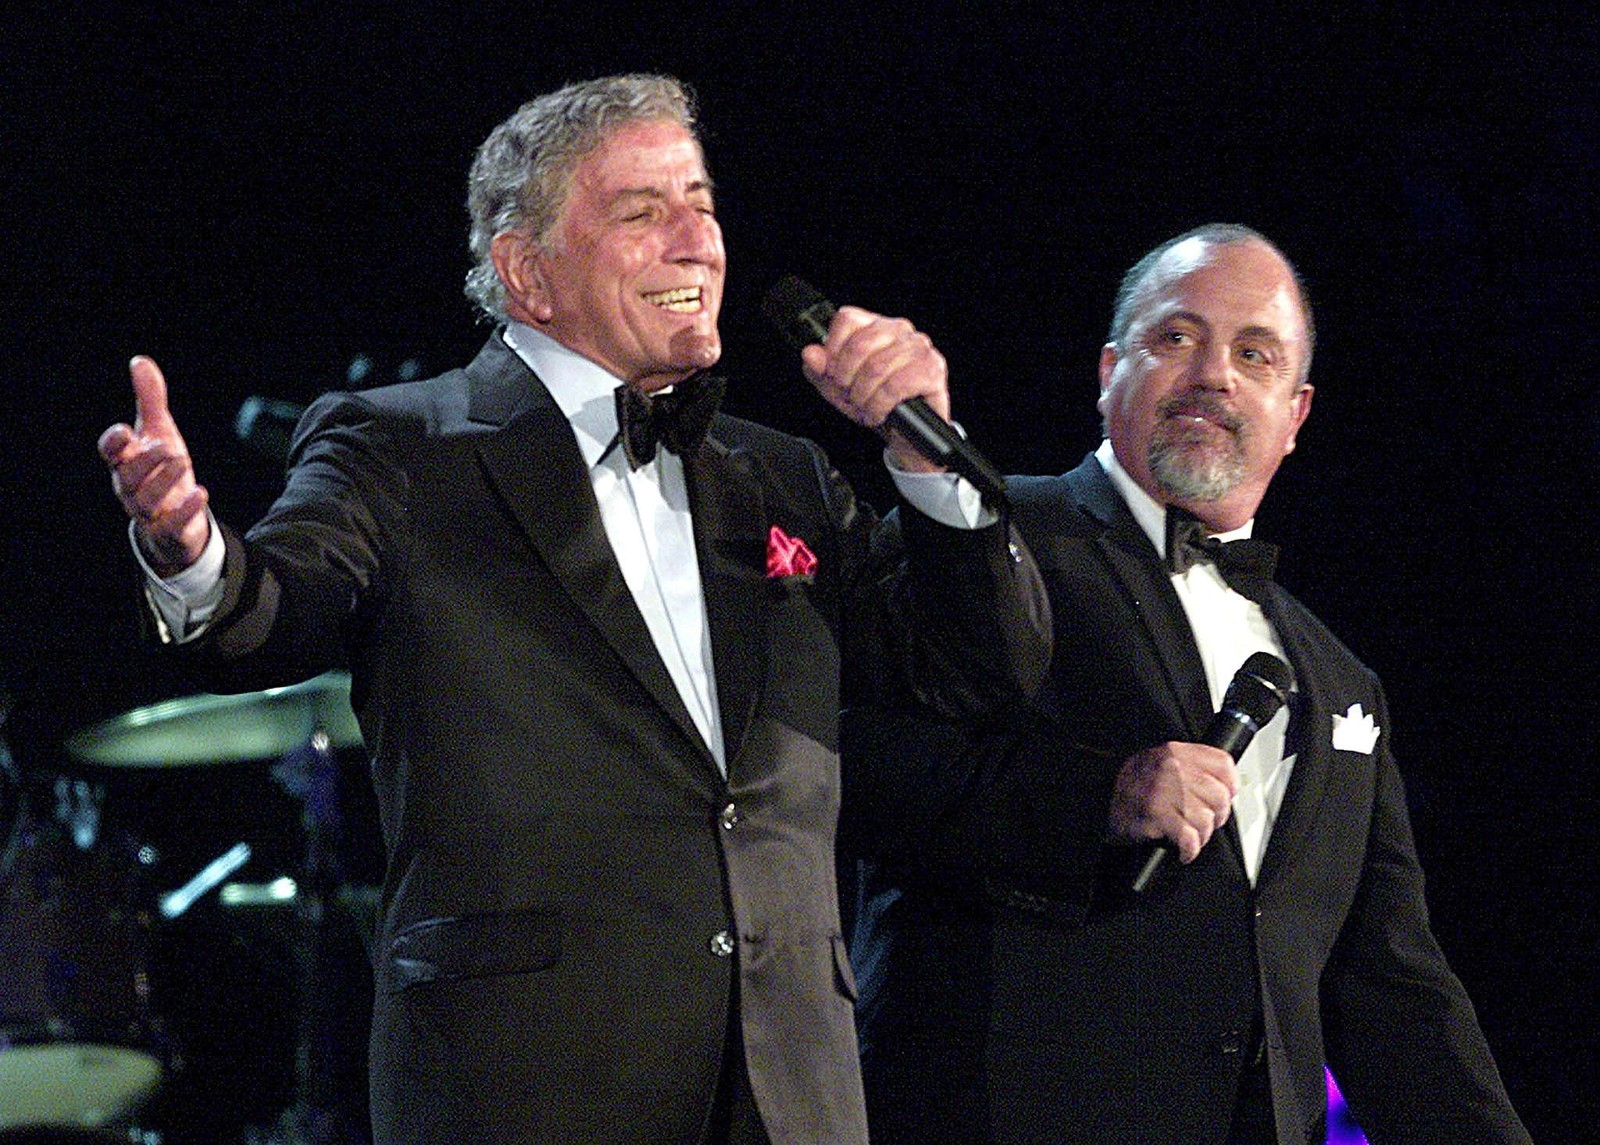 Tony Bennett e Billy Joel se apresentando no 44º Grammy Awards em Los Angeles, em 2002. Eles cantaram a música "A New York State of Mind", indicada para Melhor Colaboração Pop com Vocais.  — Foto: AFP/Hector MATA